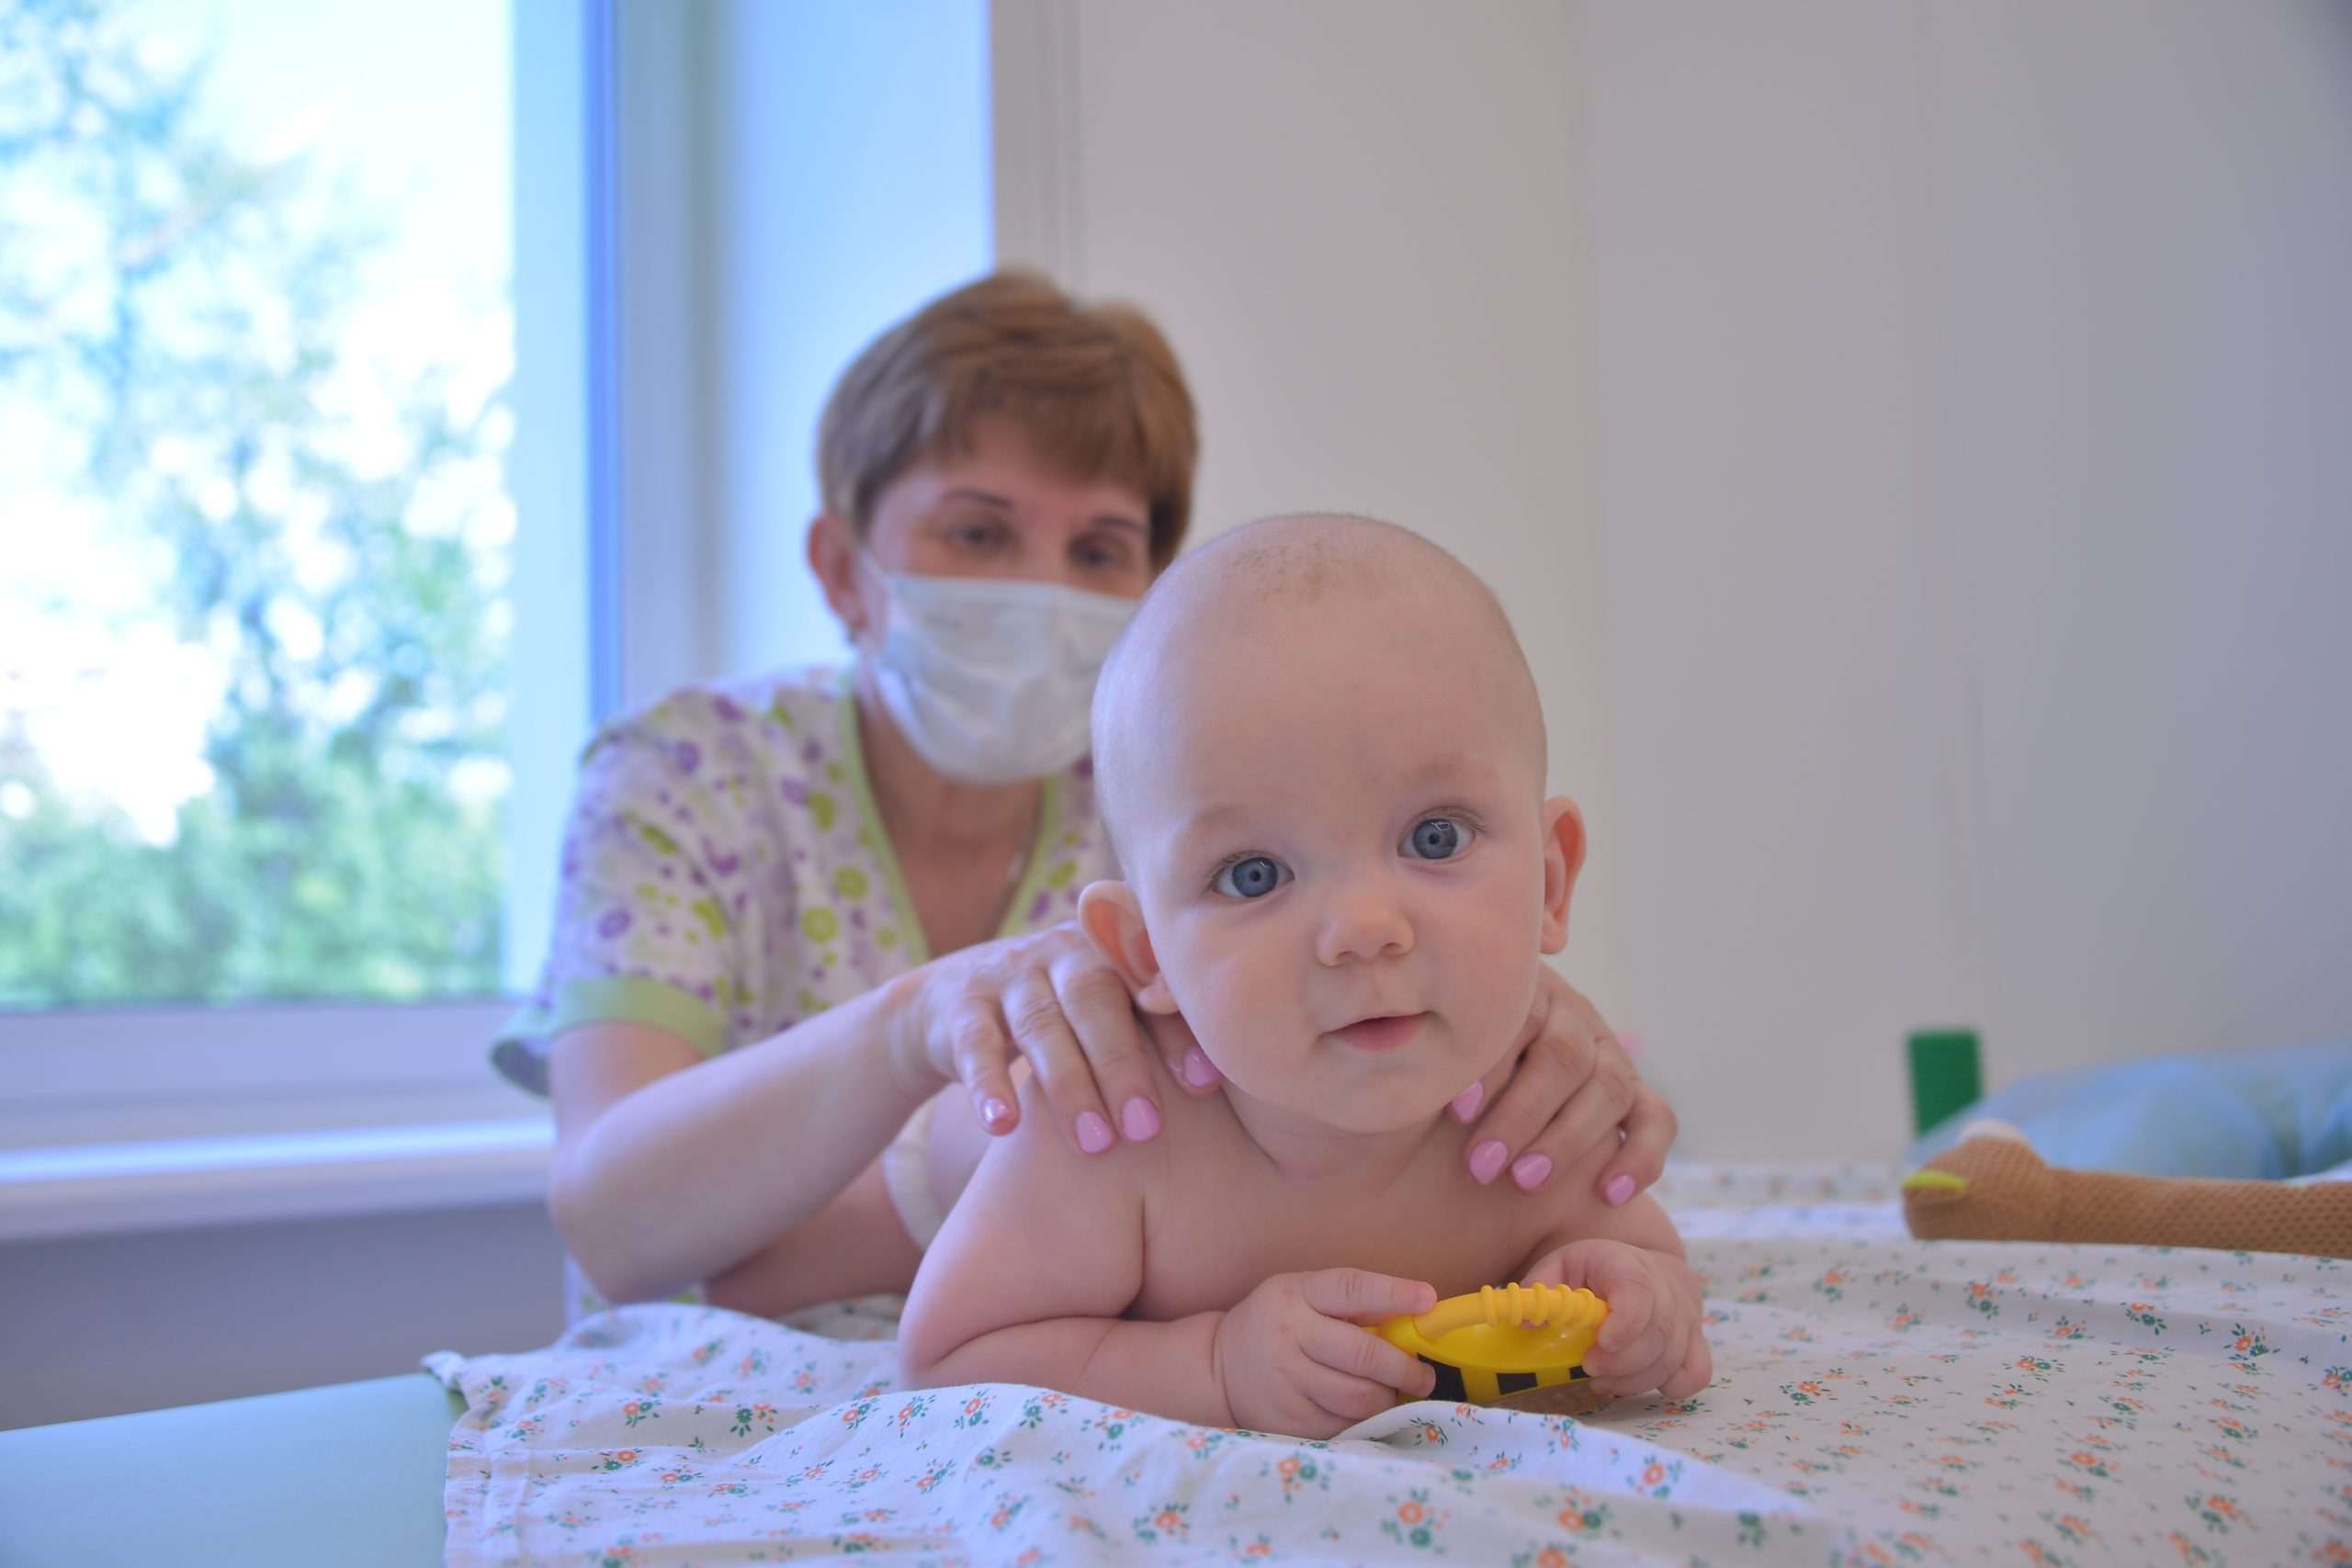 14 июня 2022 года. В обновленной детской поликлинике № 104 врач Маргарита Волощук делает лечебный массаж маленькому пациенту Луке Егорову. Фото: Анна Малакмадзе